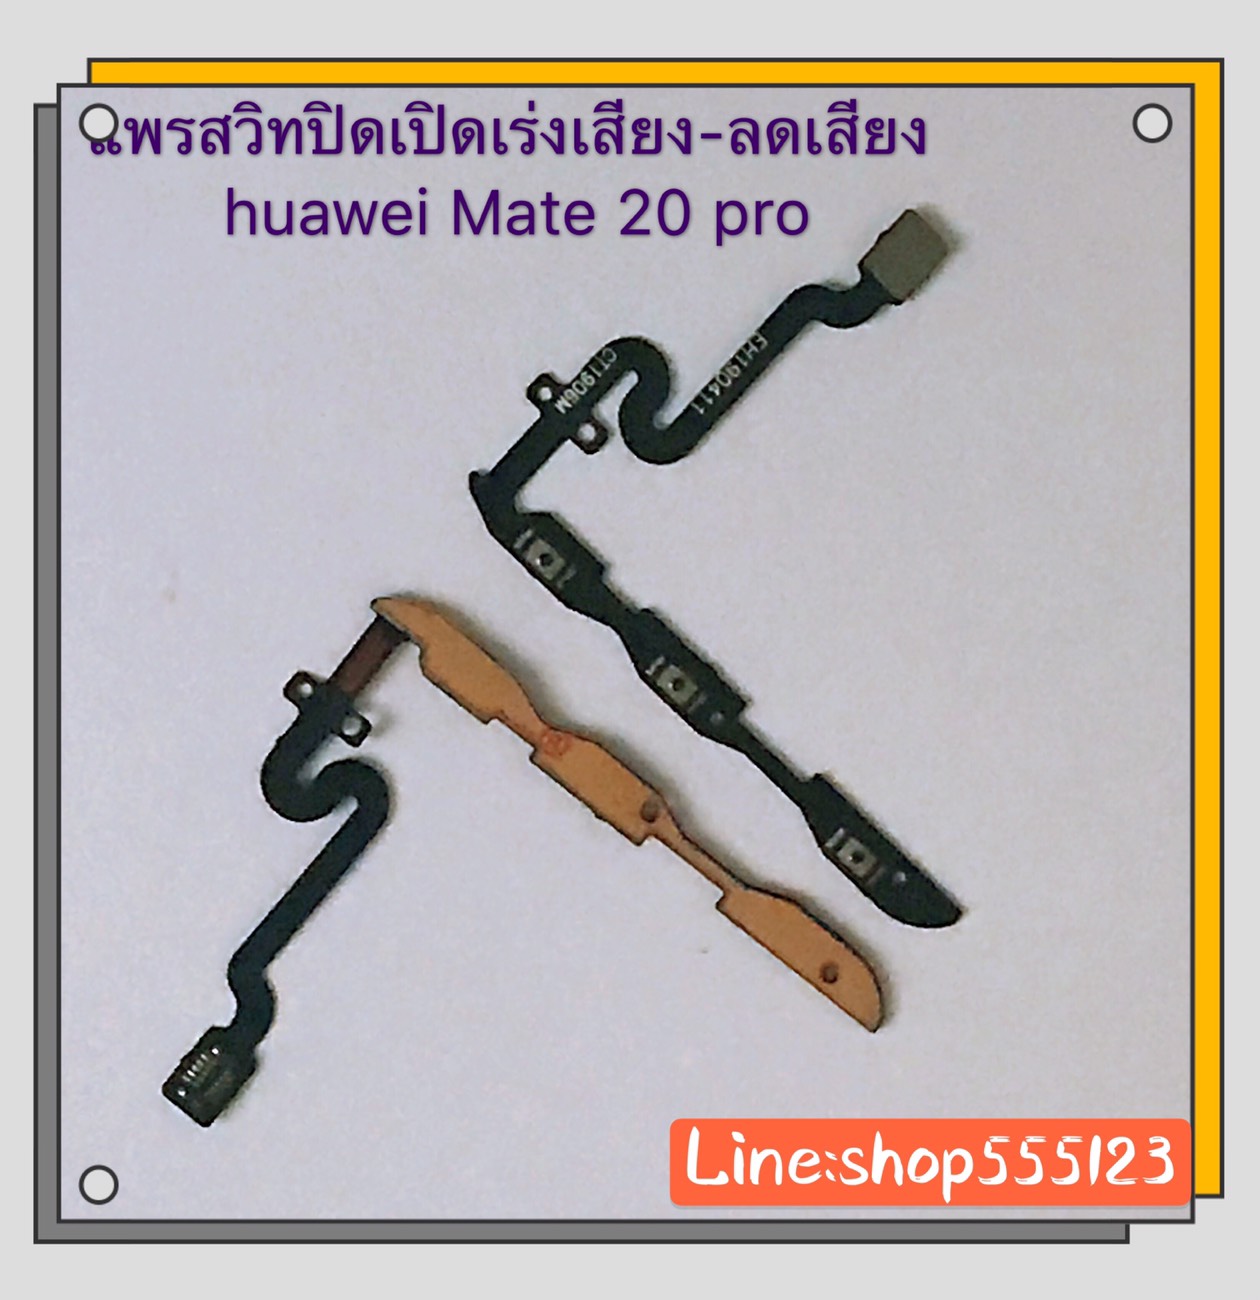 แพรสวิท ปิด-เปิด ( PCB on-off ) Huawei Mate 20 Pro / Mate 20 / Mate 10 Pro สี สีดำ สี สีดำรูปแบบรุ่นที่ีรองรับ แพรสวิท ปิด-เปิด ( PCB on-off ) Huawei Mate 20 Pro